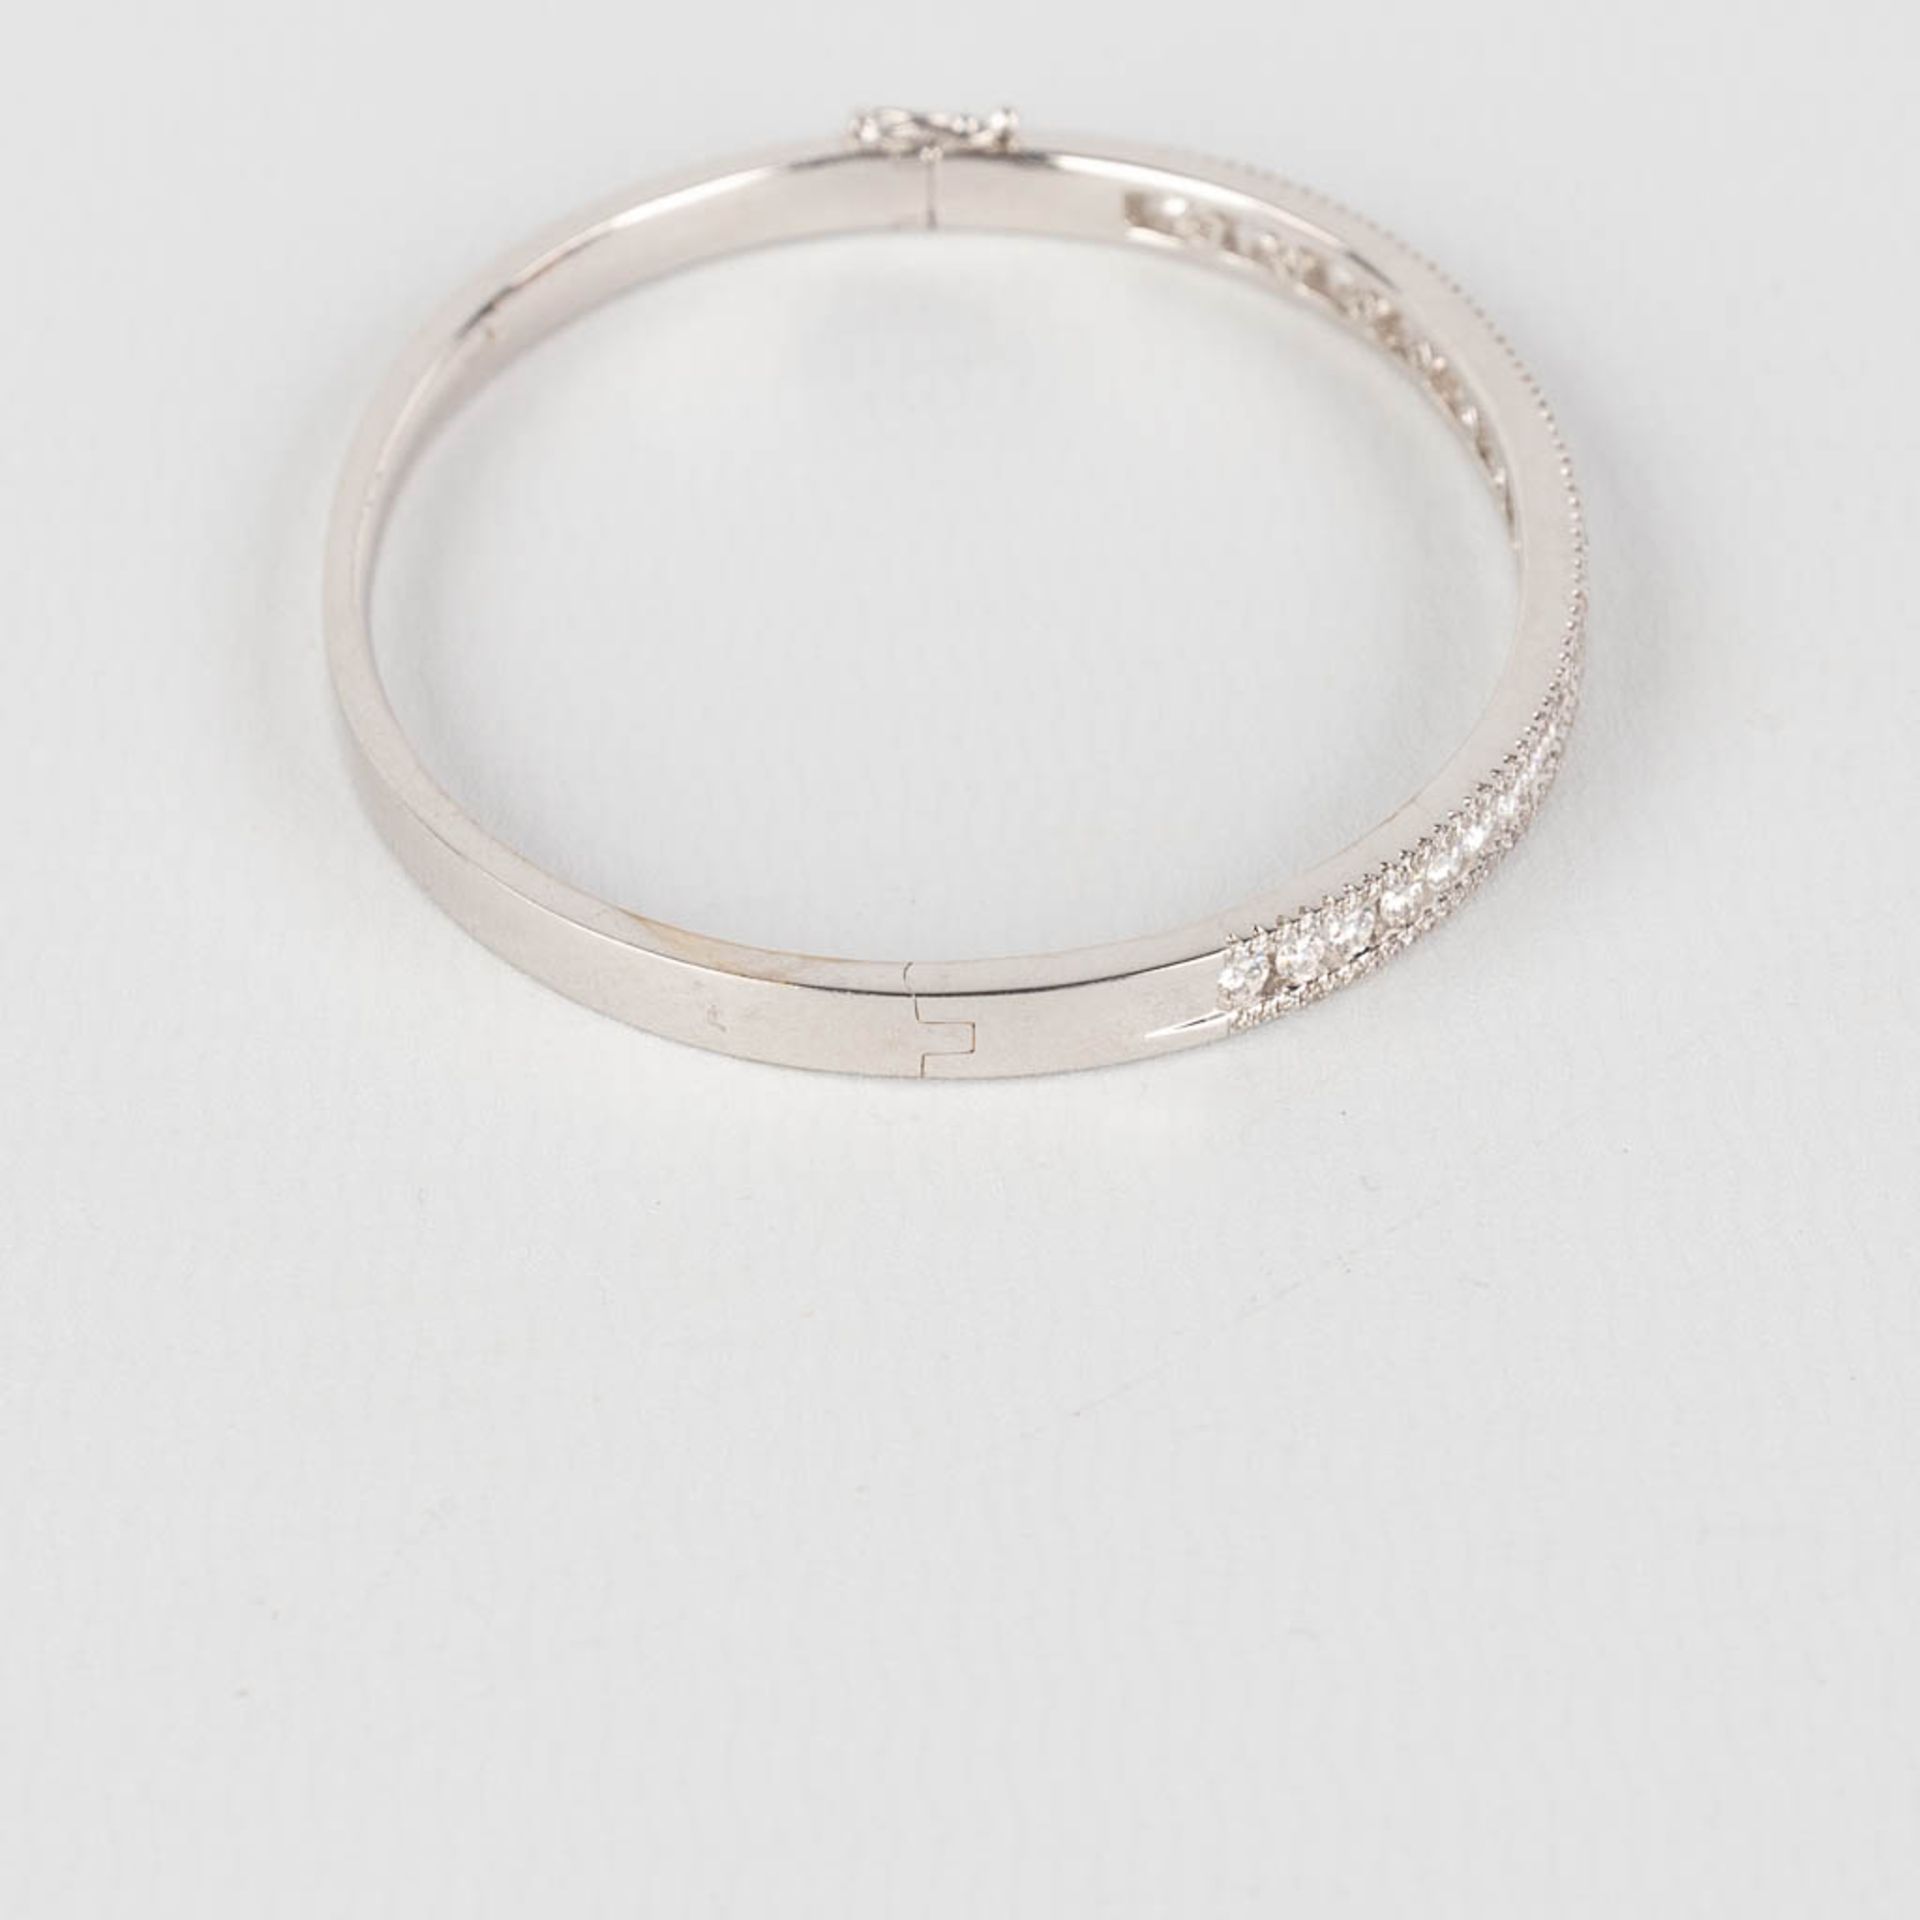 A bracelet, 18kt white gold with brilliants, appr. 2,18ct. 20,41g. - Bild 6 aus 9